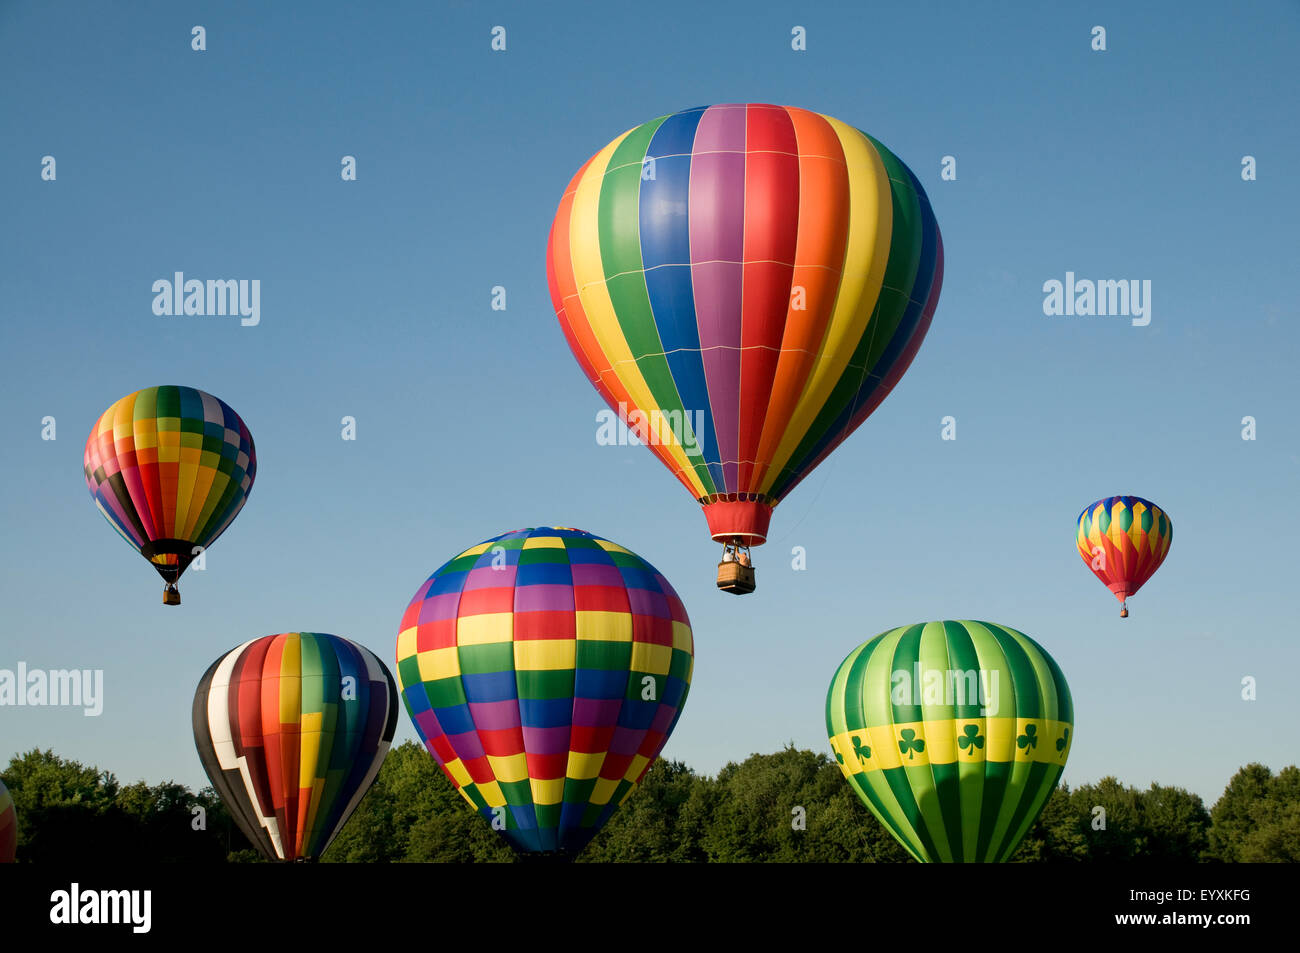 Varios globos de aire caliente con coloridos sobres ascendente o lanzar en un festival de globos aerostáticos Foto de stock